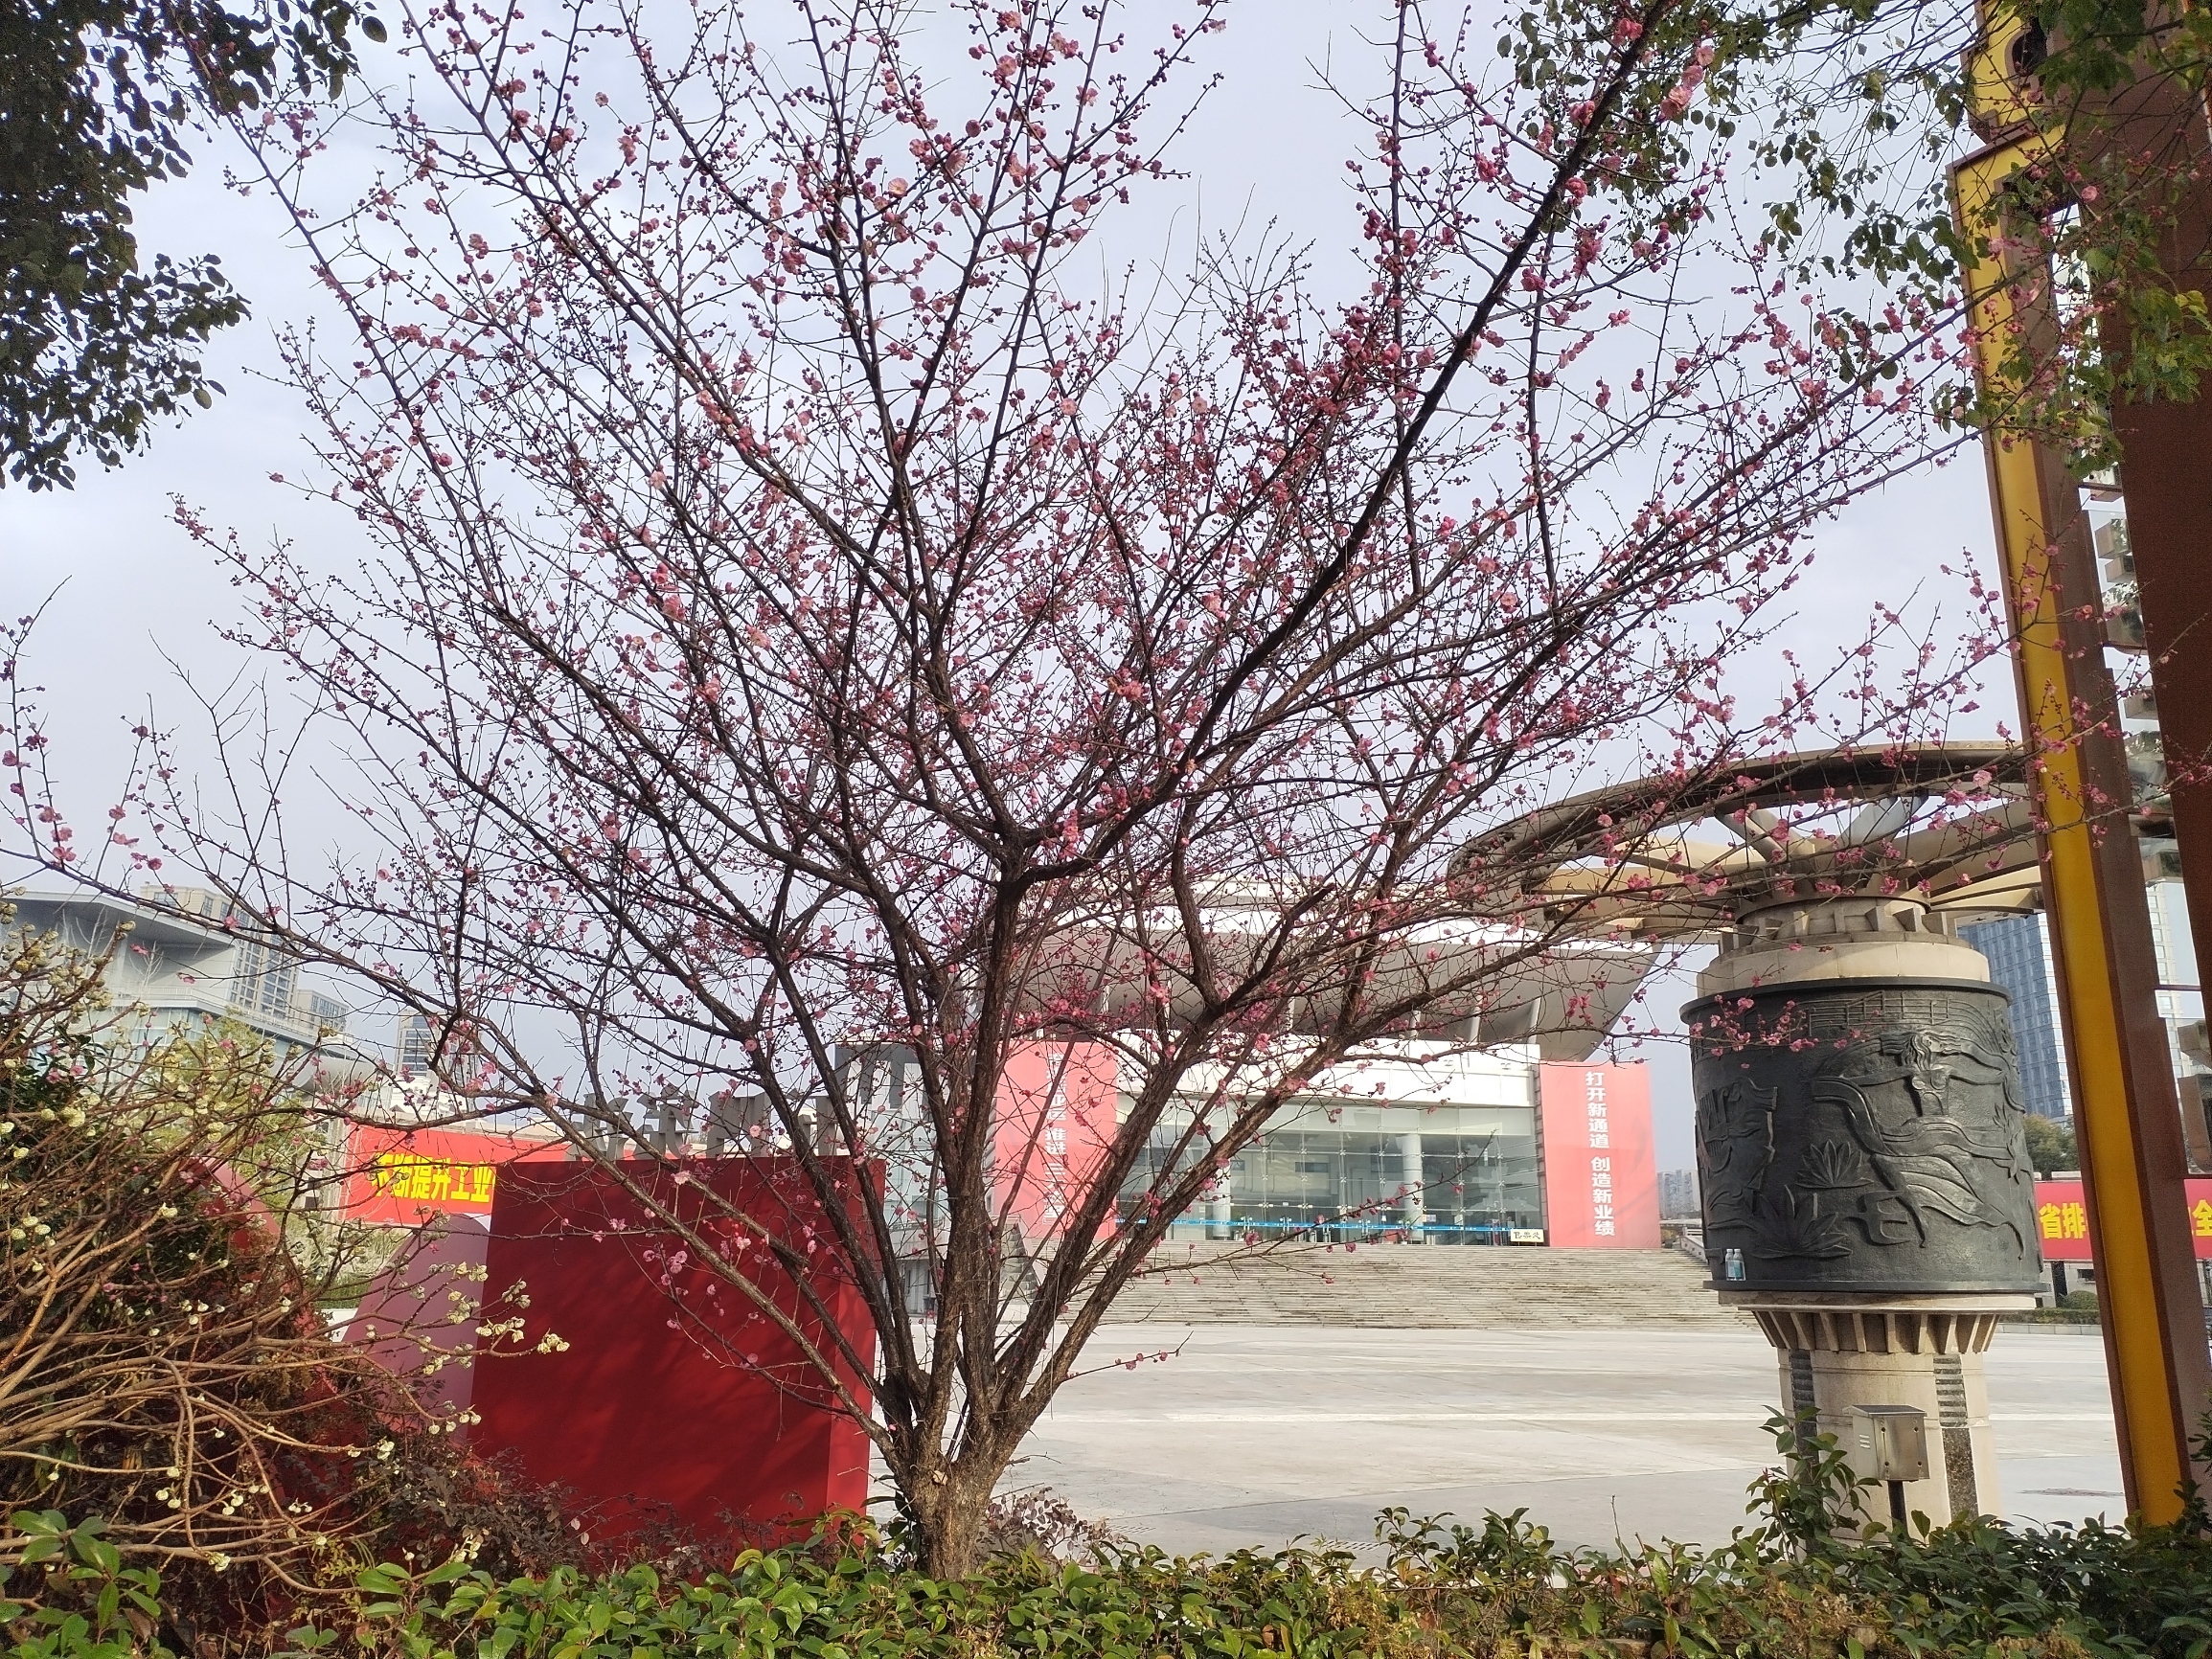 今天路过萧山歌剧院，发现广场前面有一株红梅开了，还没过年，总觉得春天还早，想想其实立春已经过了，确实